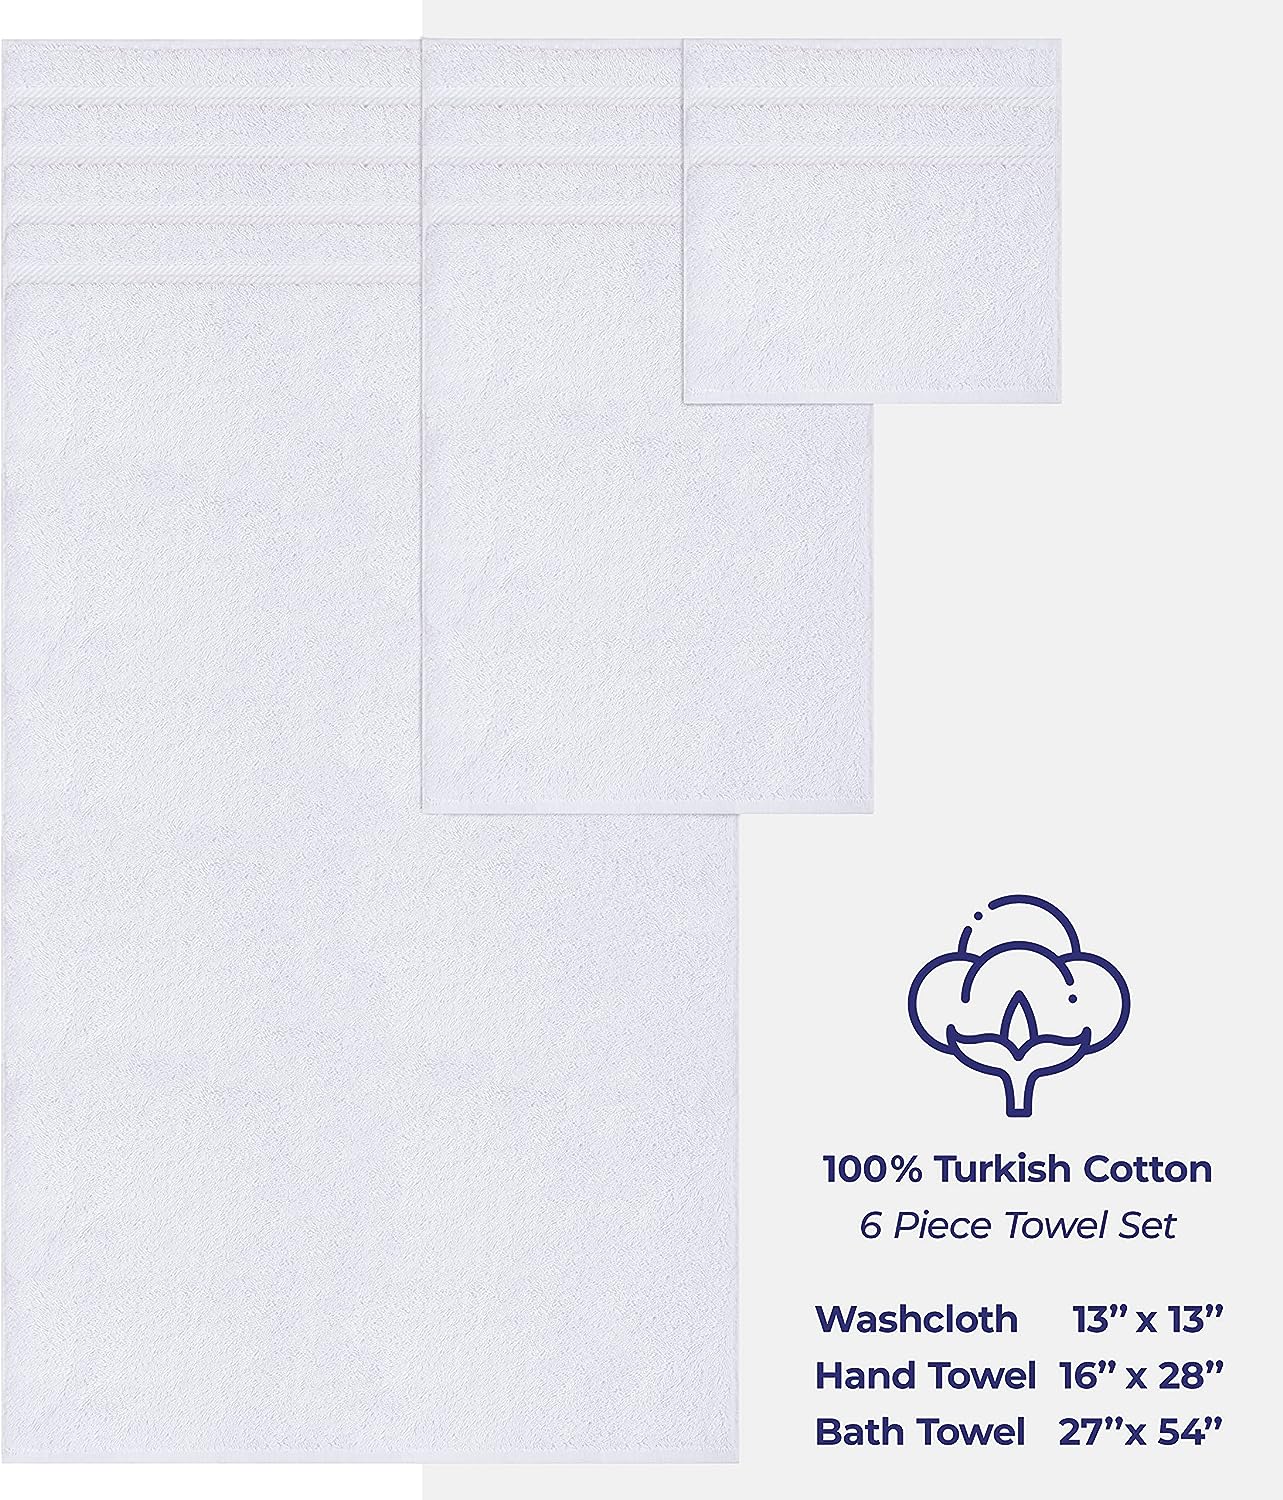  American Soft Linen - Juego de toallas de lujo de 6 piezas, 2  toallas de baño, 2 toallas de mano y 2 paños, toallas 100% de algodón turco  para baño, juegos